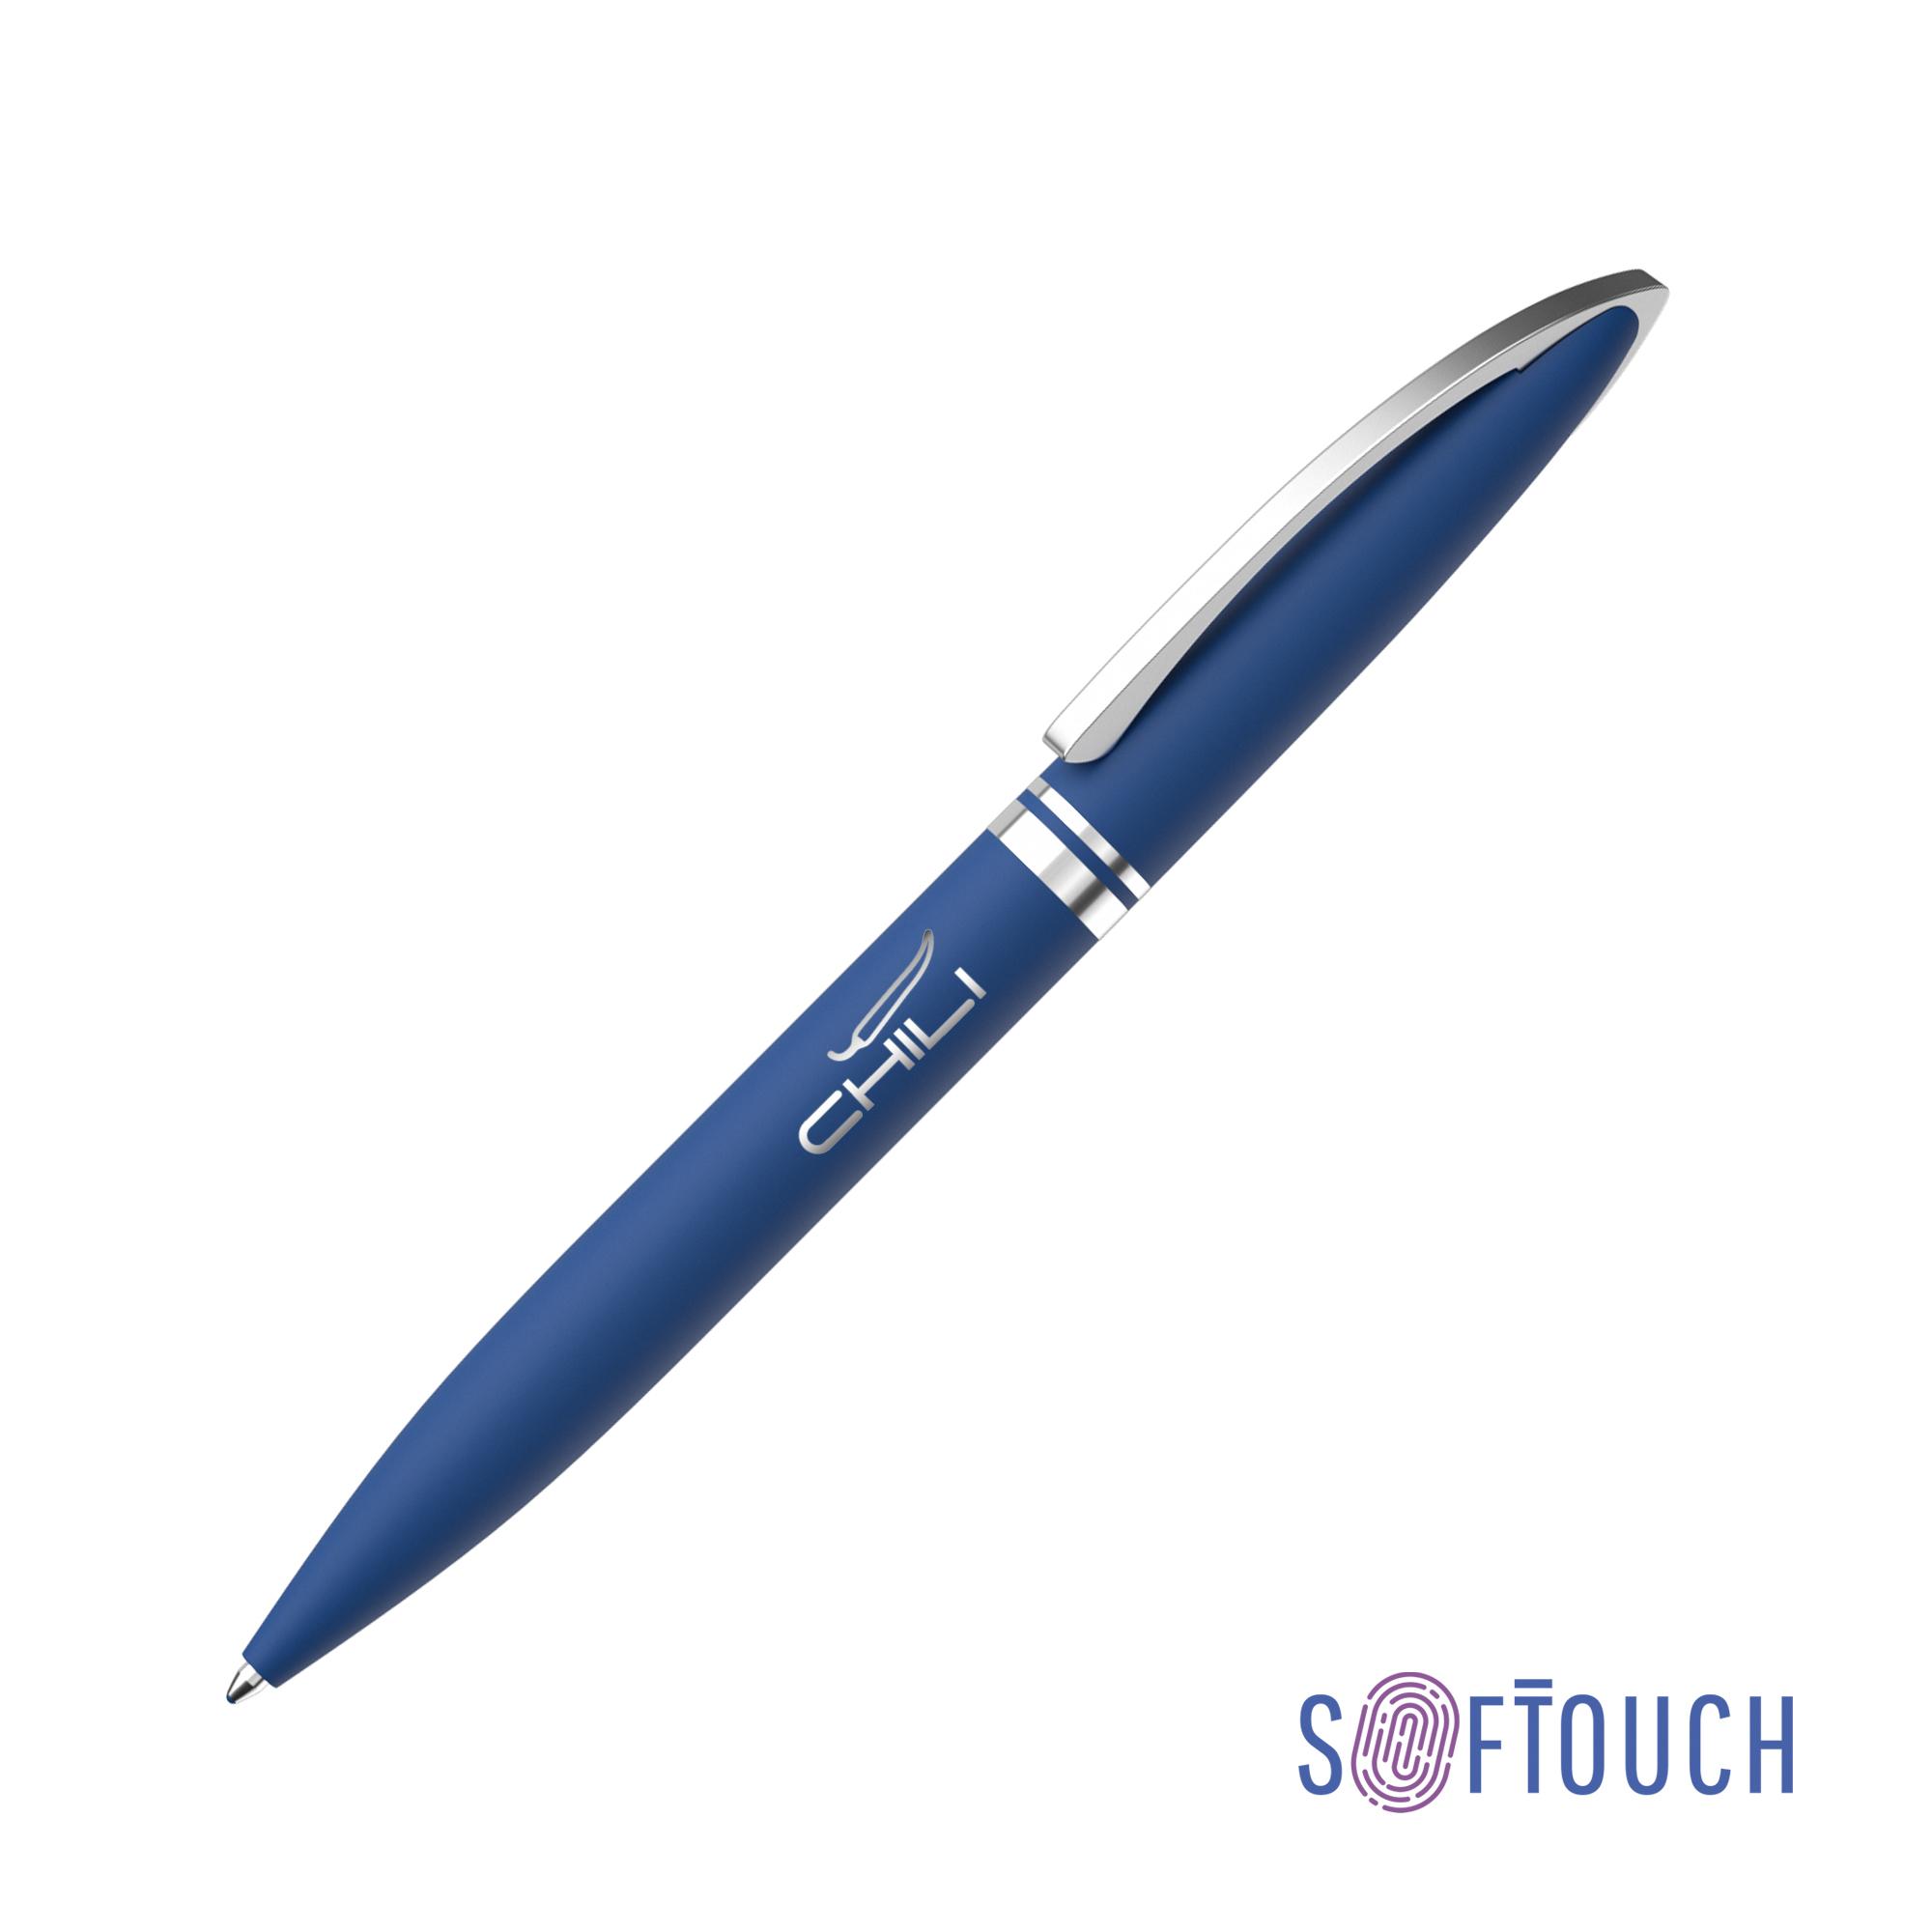 Ручка шариковая "Rocket", покрытие soft touch, цвет белый - купить оптом